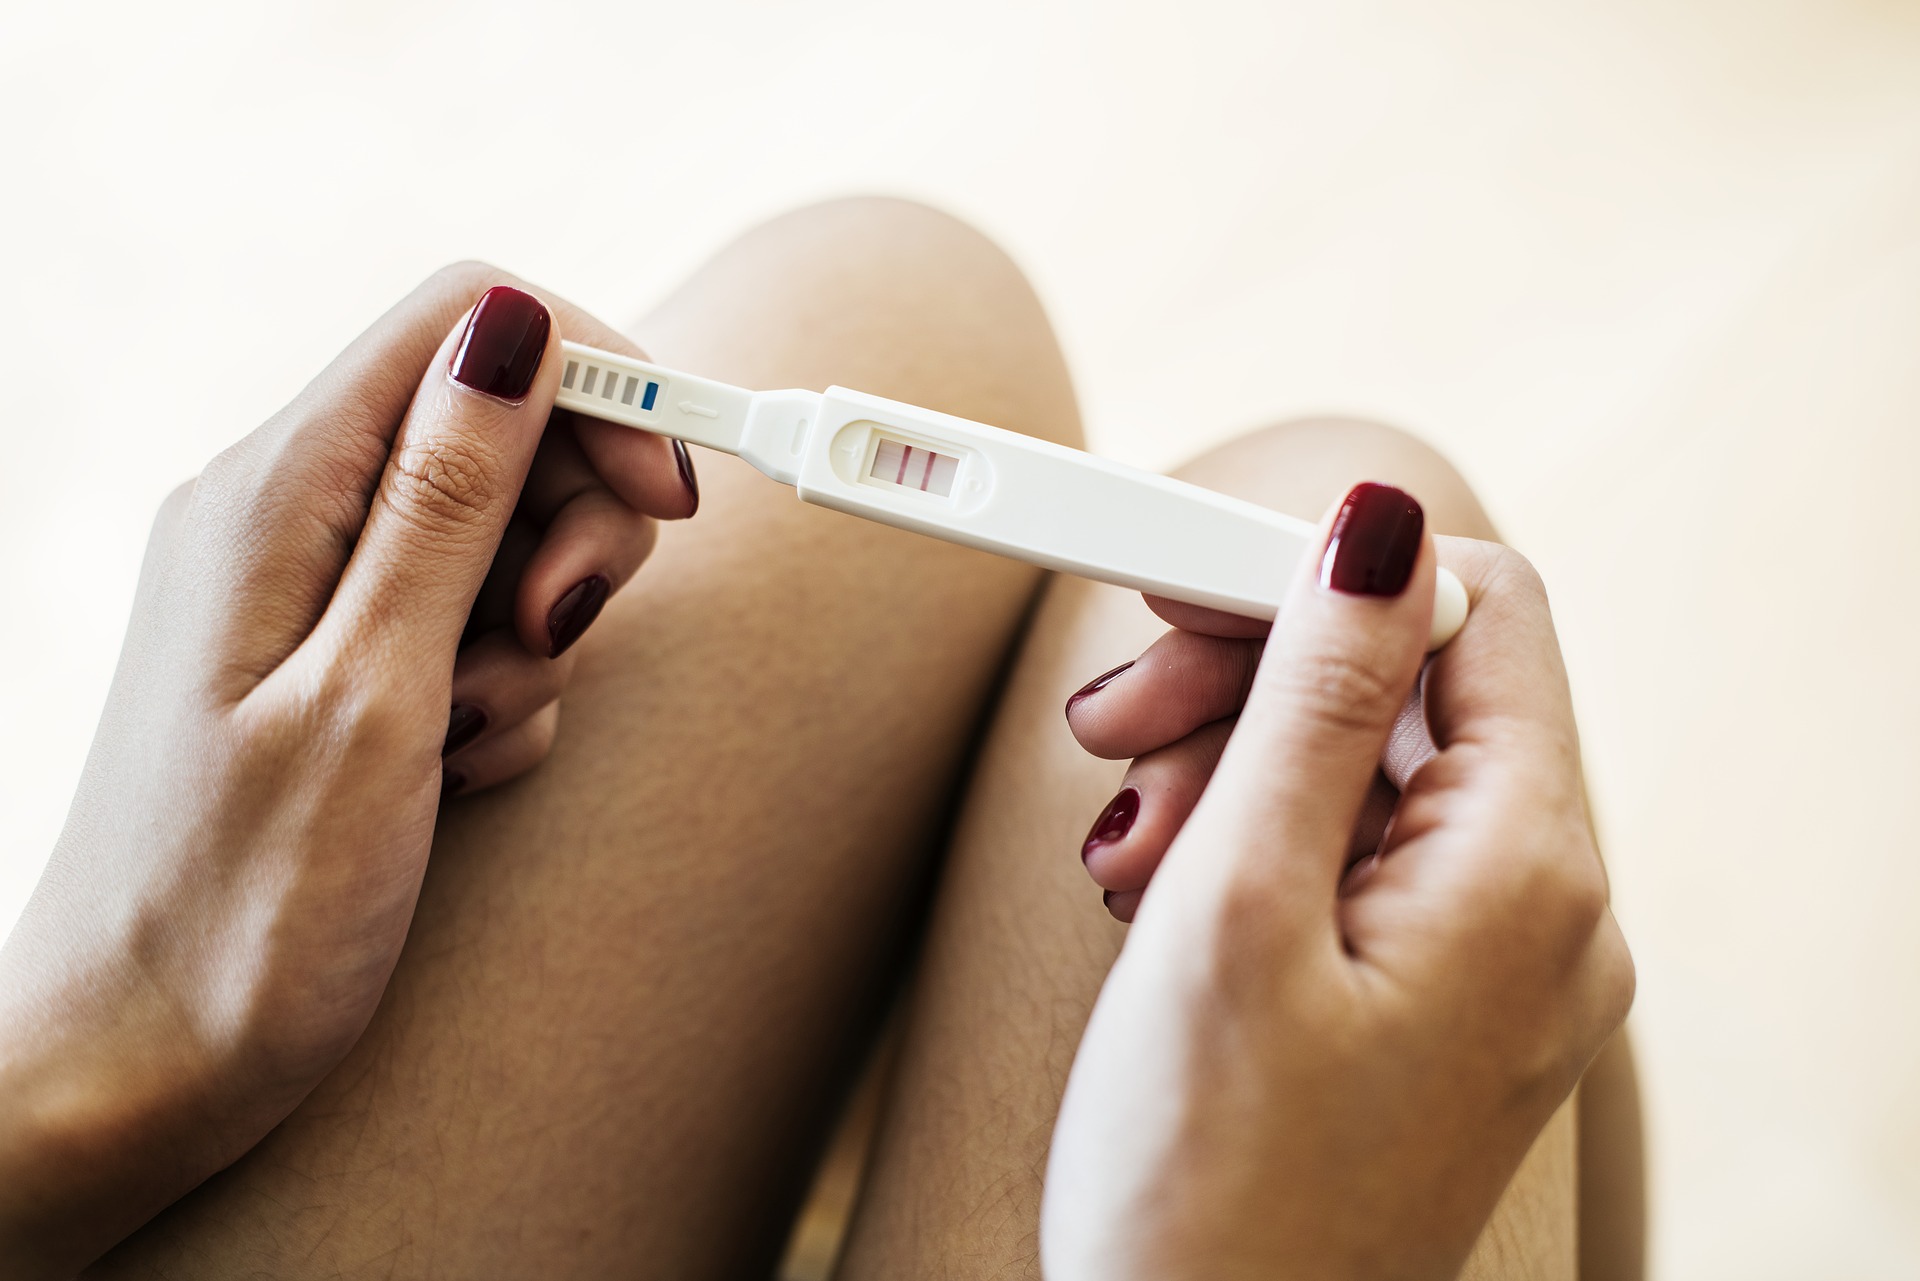 Menstruação desregulada, o que pode ser?, Papo Fértil